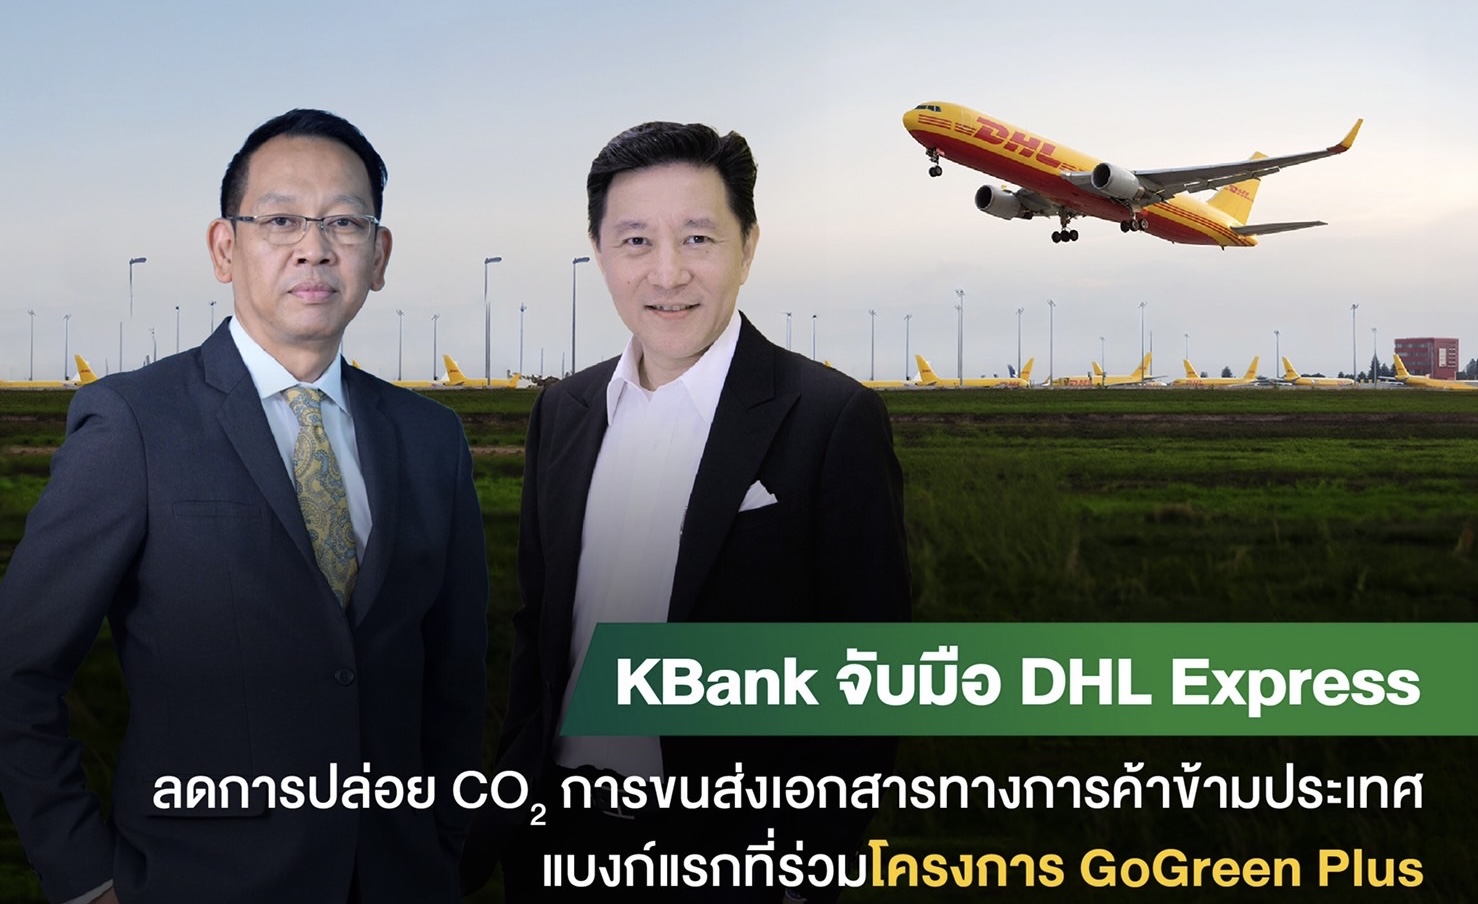 กสิกรไทยจับมือดีเอชแอล เอ๊กซ์เพรสลดการปล่อยคาร์บอนจากการขนส่งเอกสารทางการค้าข้ามประเทศด้วยเชื้อเพลิงการบินที่ยั่งยืน ธนาคารแรกที่ร่วมโครงการ  GoGreen Plus